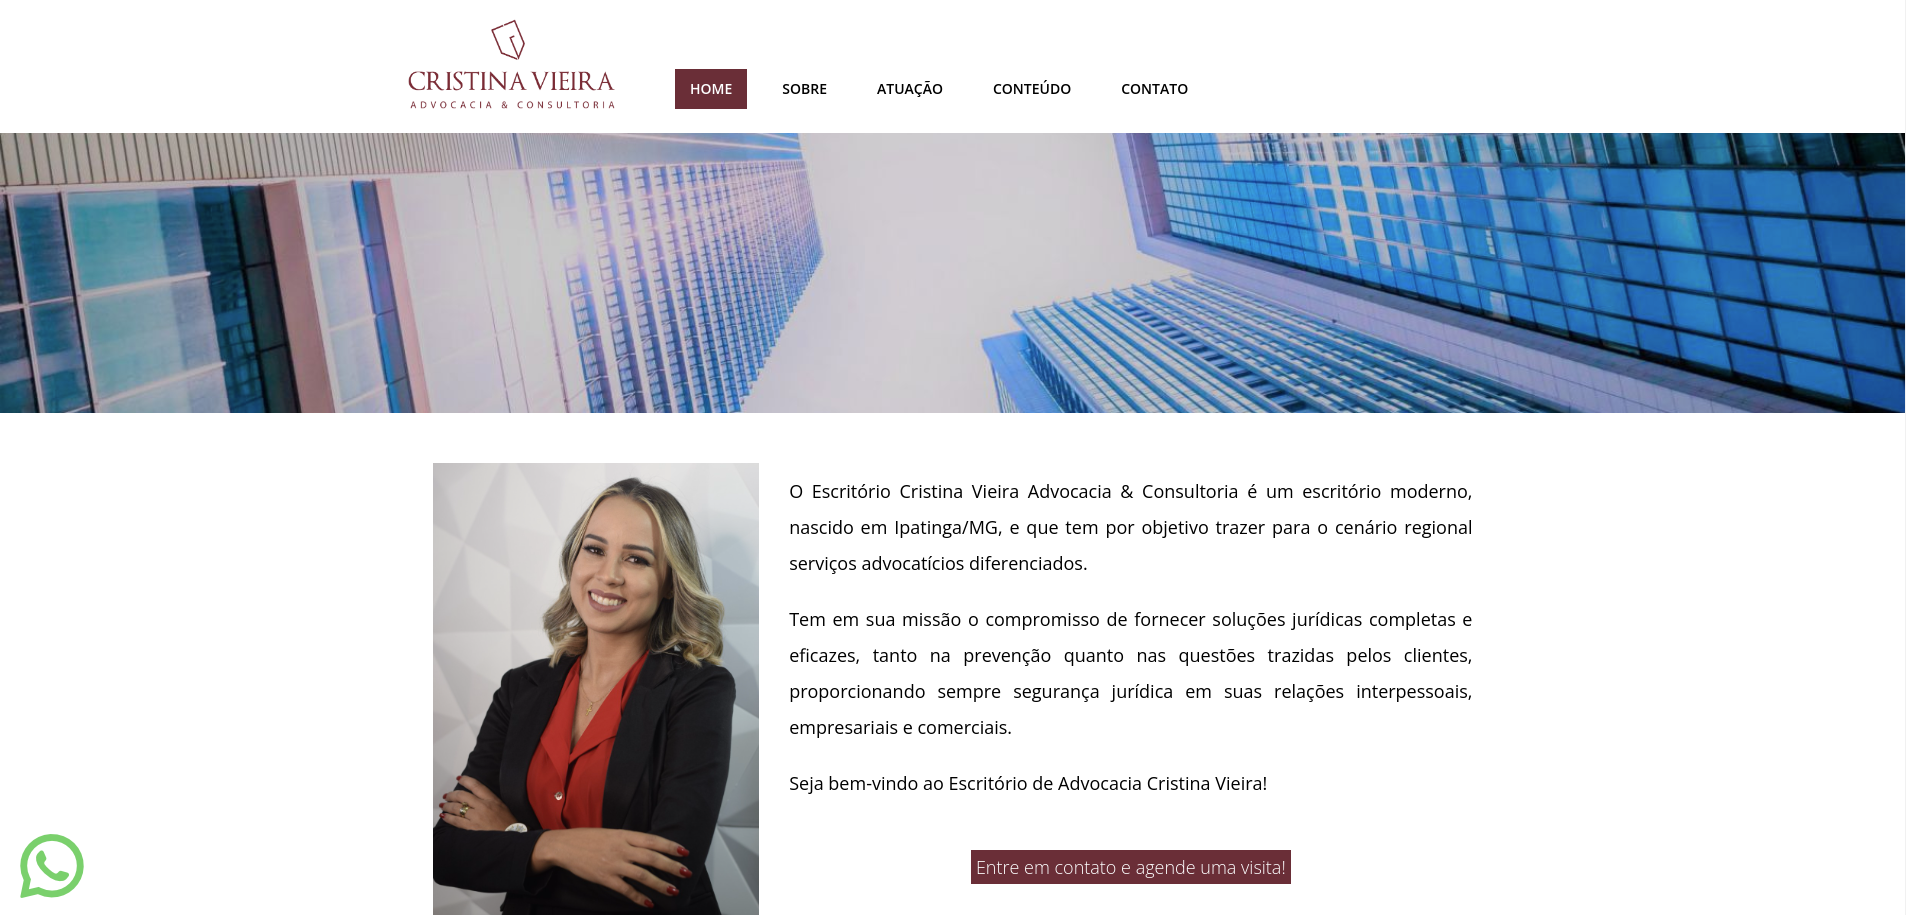 Cristina Vieira - Advocacia e Consultoria